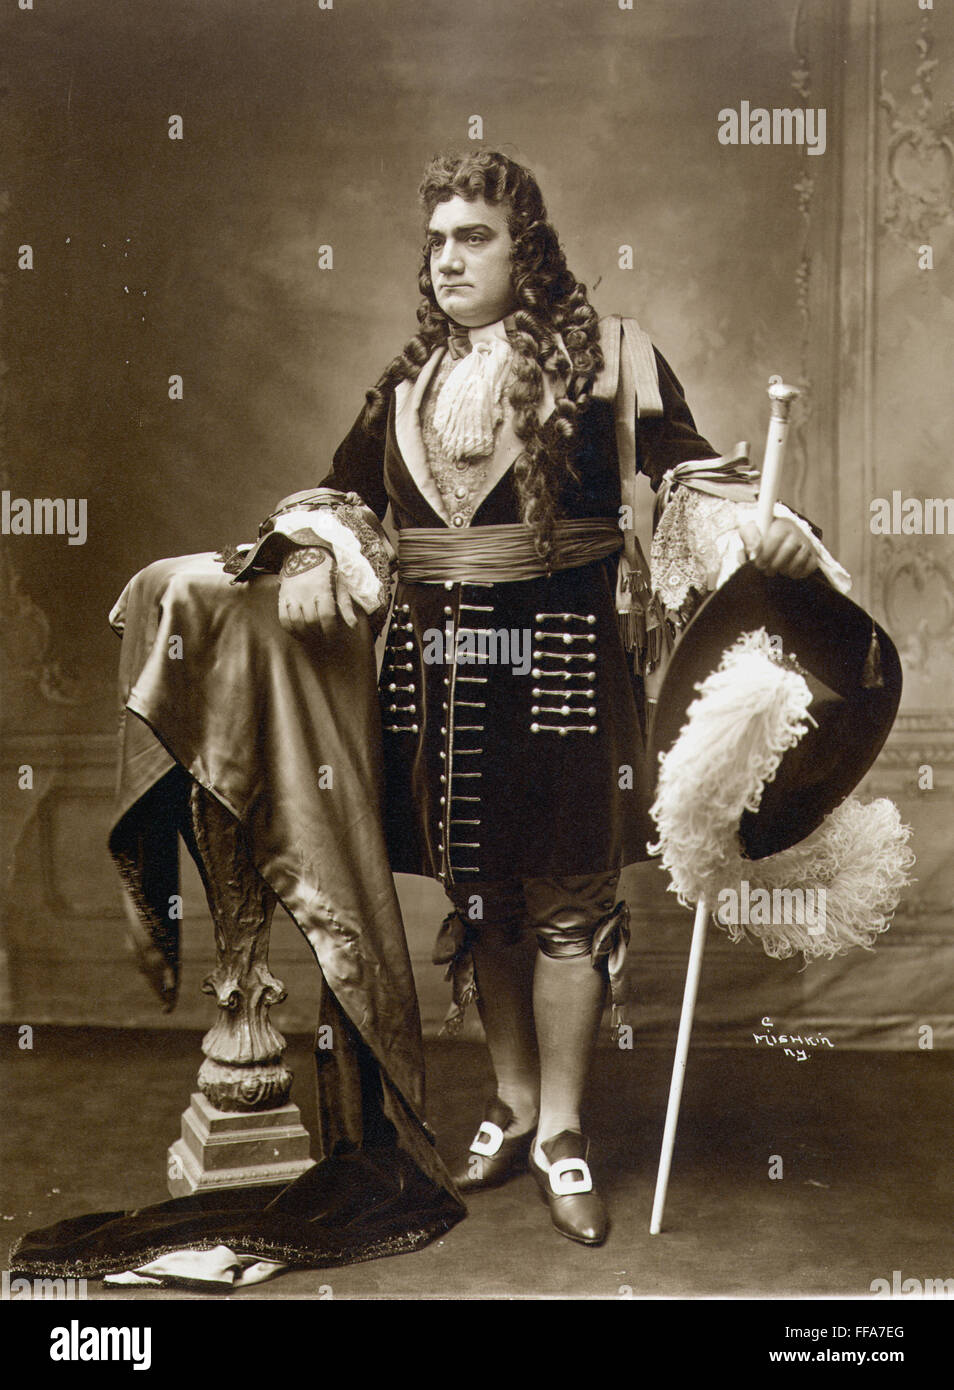 ENRICO CARUSO (1873-1921). Italian tenor. Stock Photo